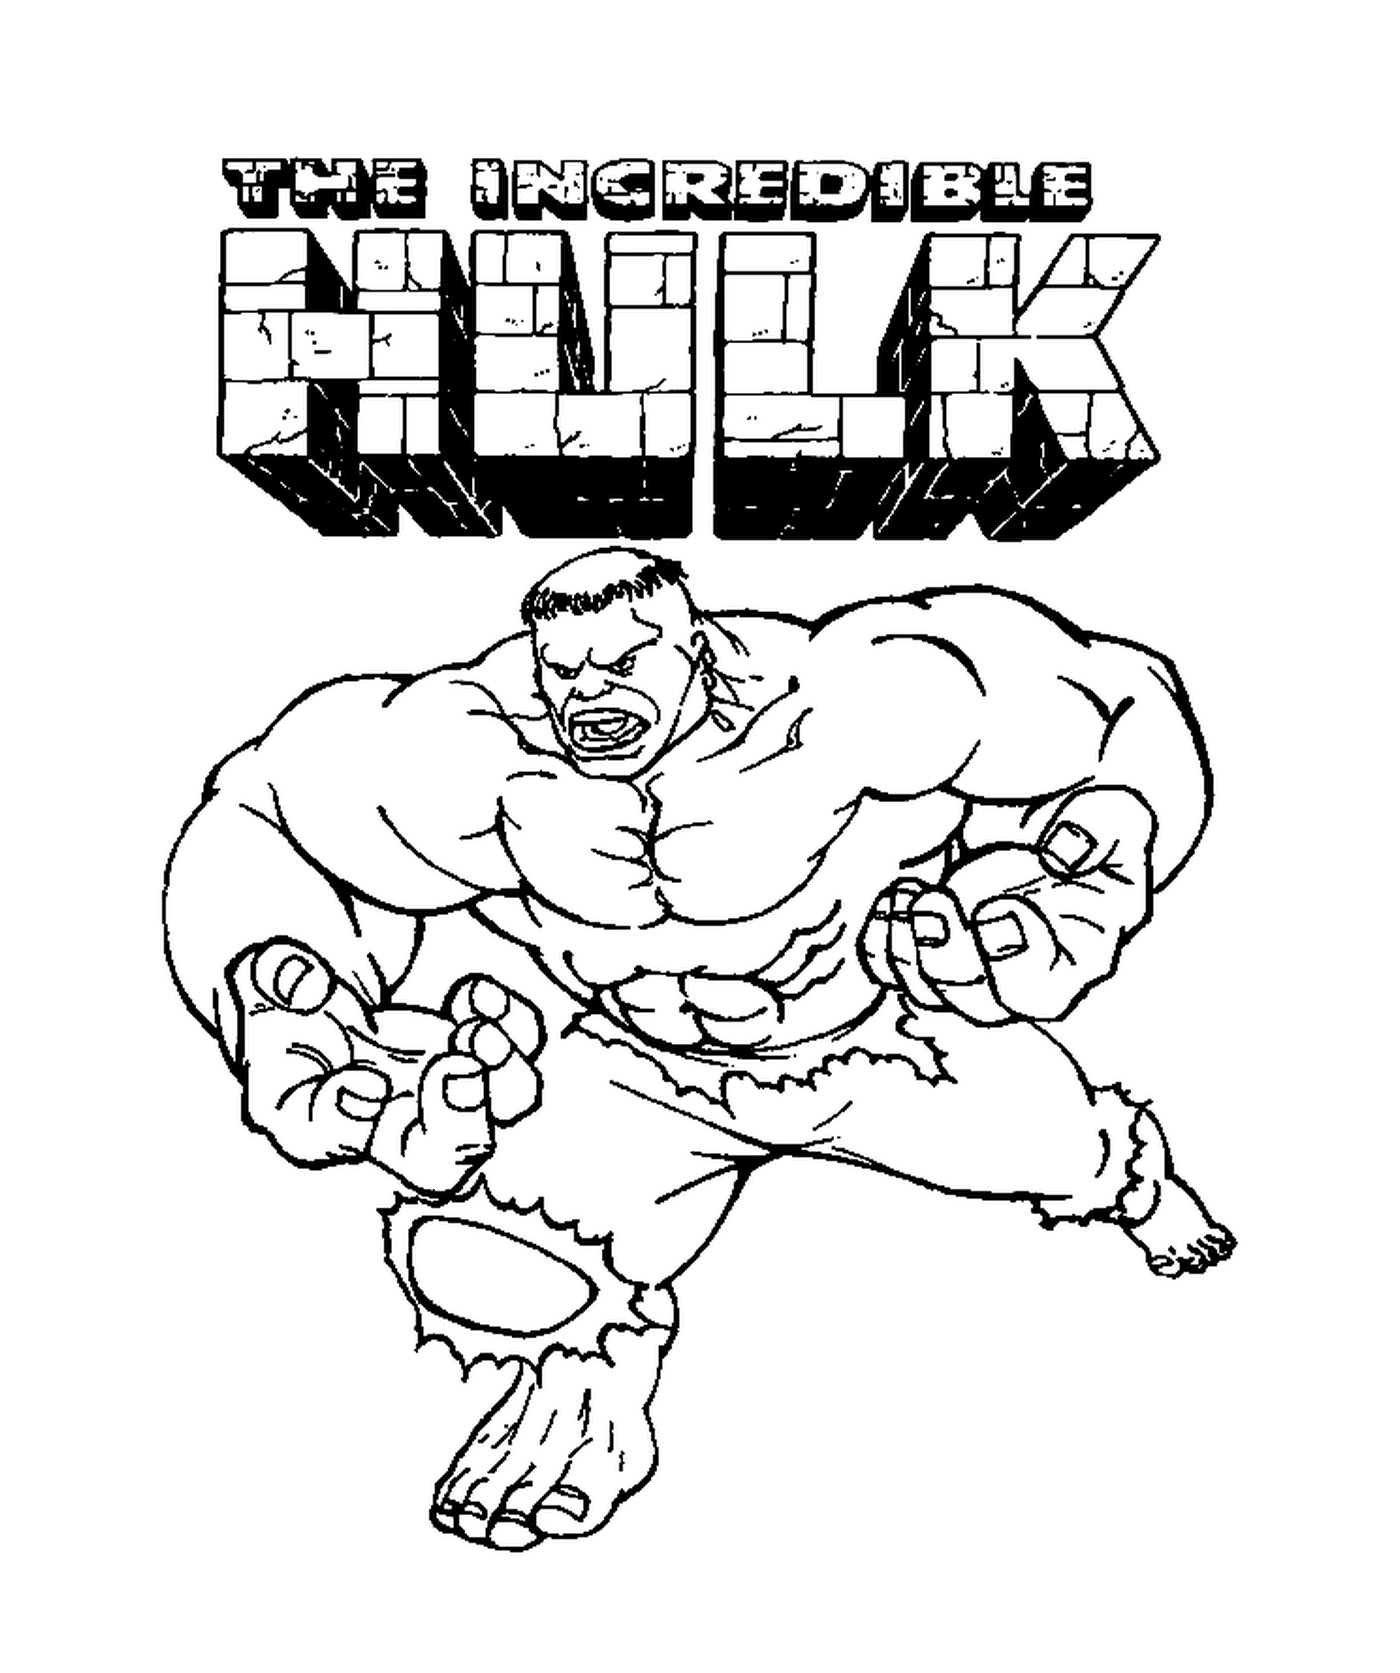  Der unglaubliche Hulk, Zeichentrickfigur 